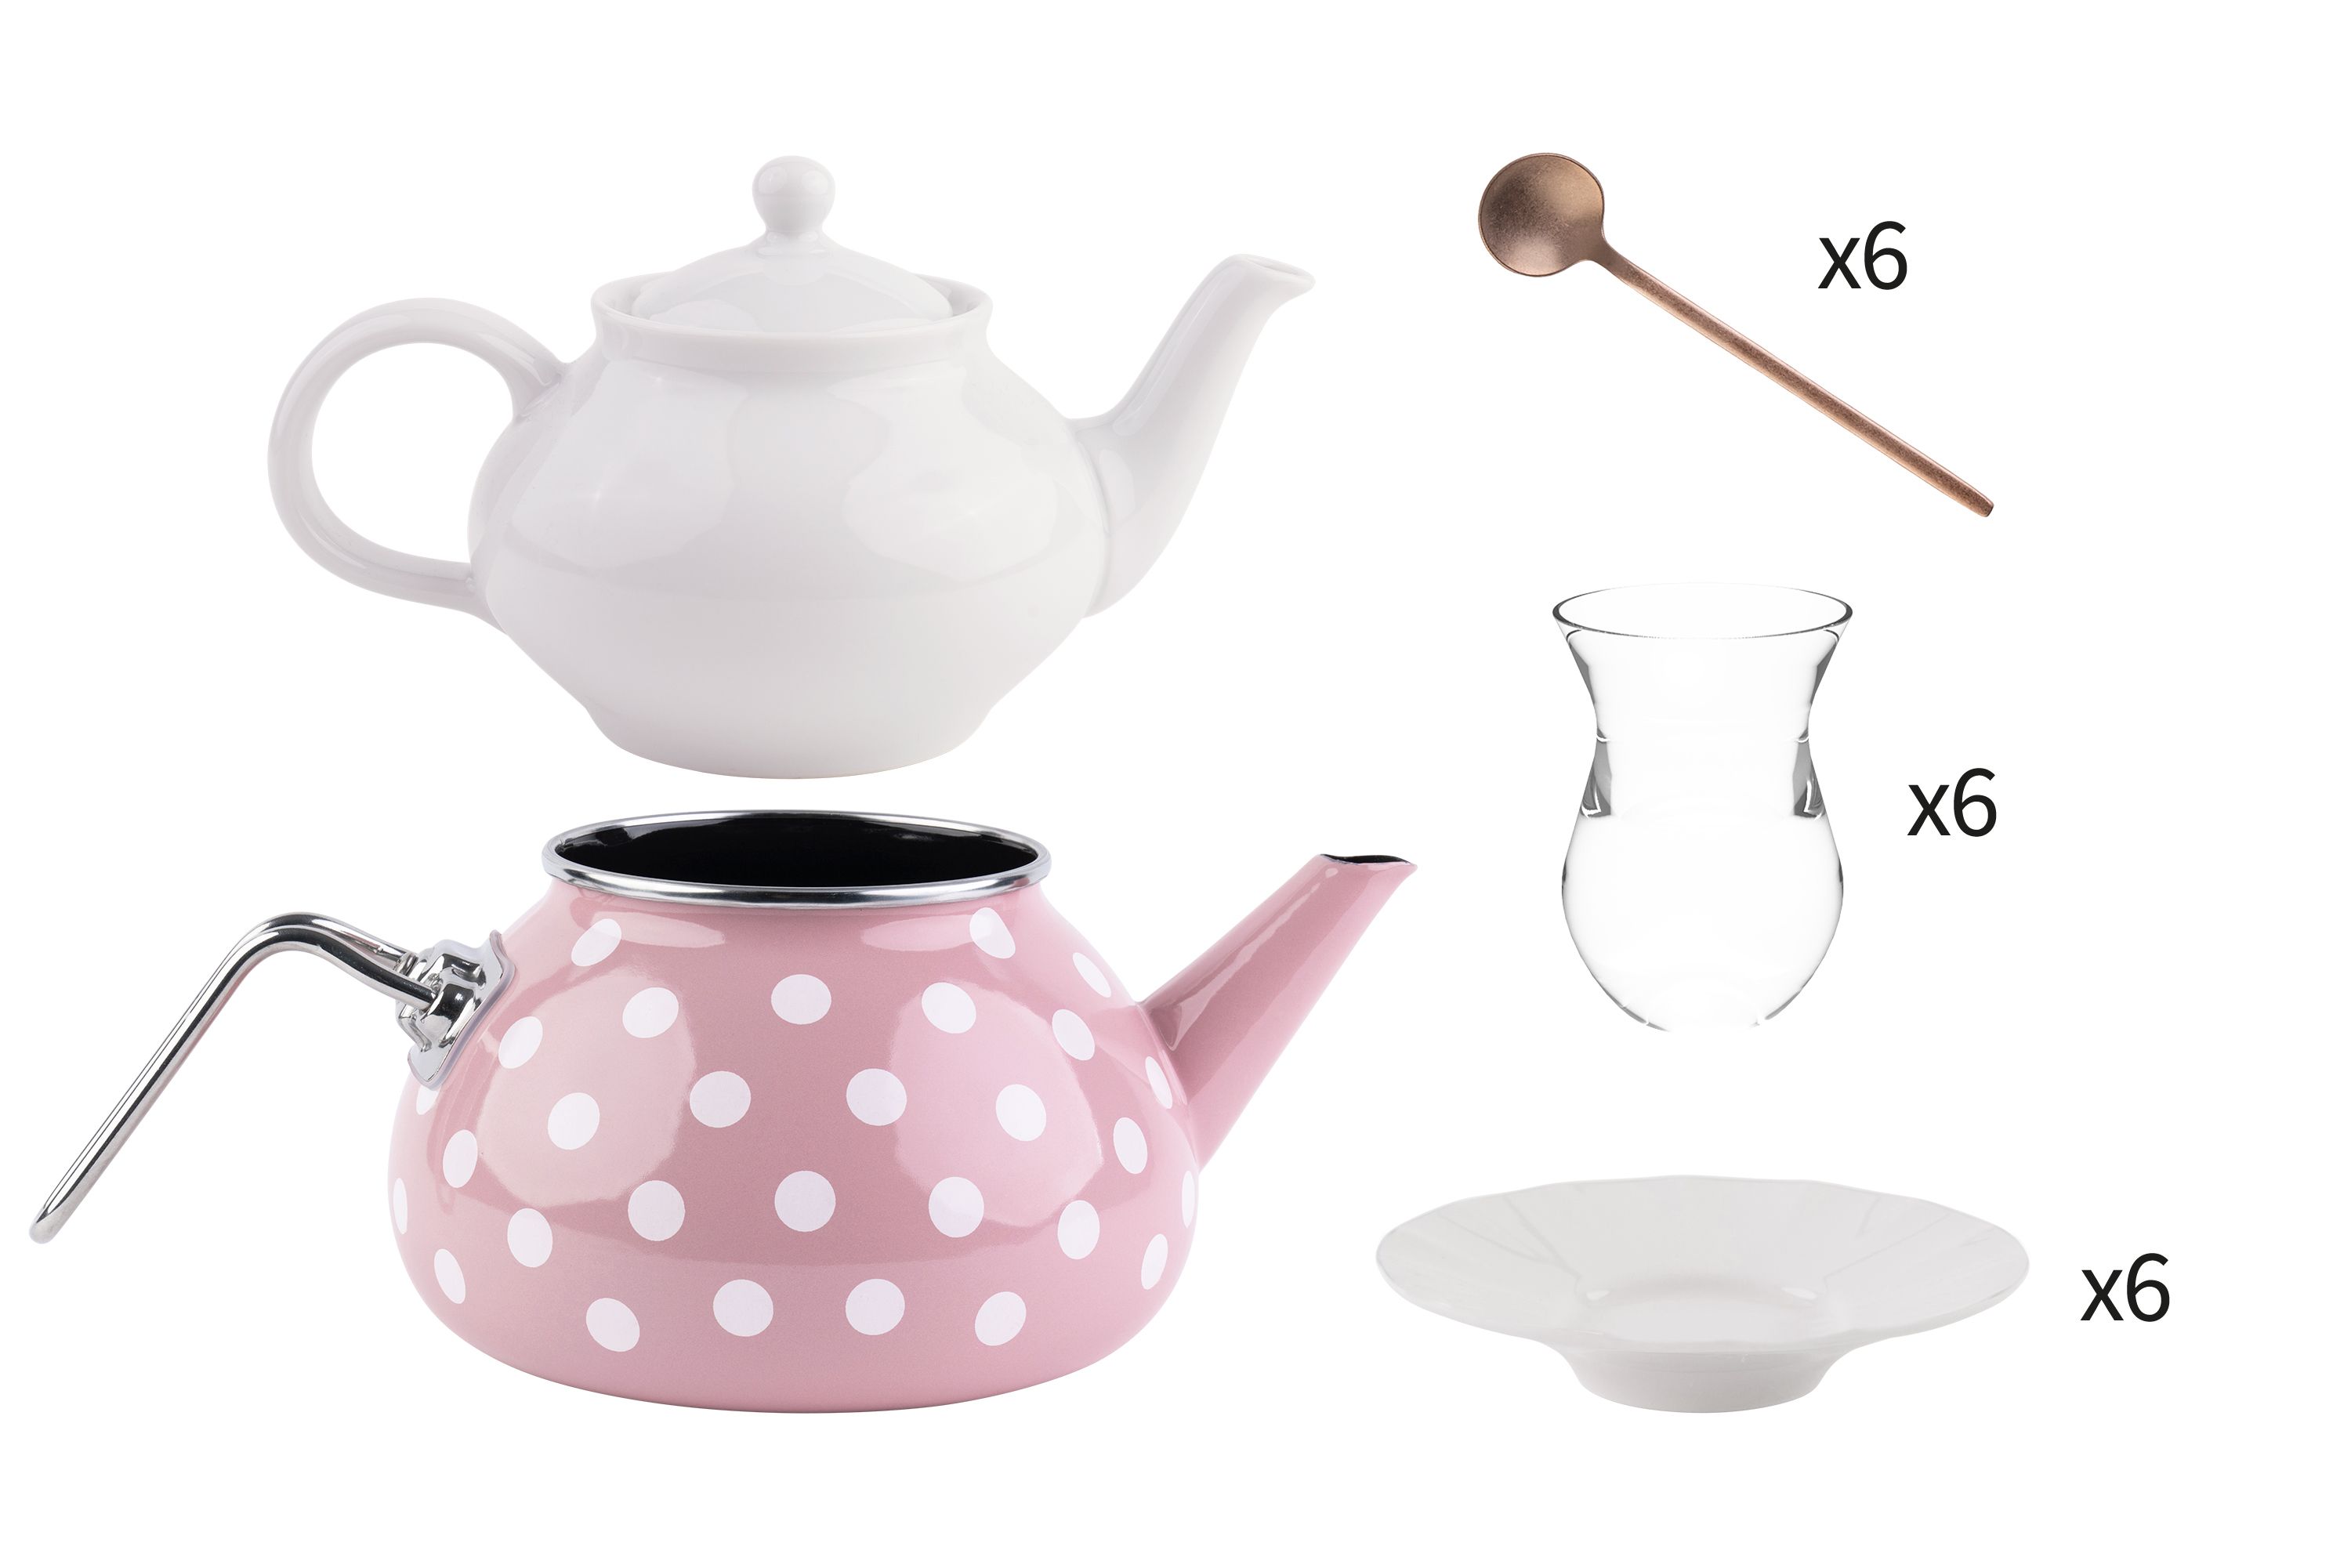 Eine rosa-gepunktete Teekanne, eine weiße Teekanne, Teegläser, Untersetzer und Löffel